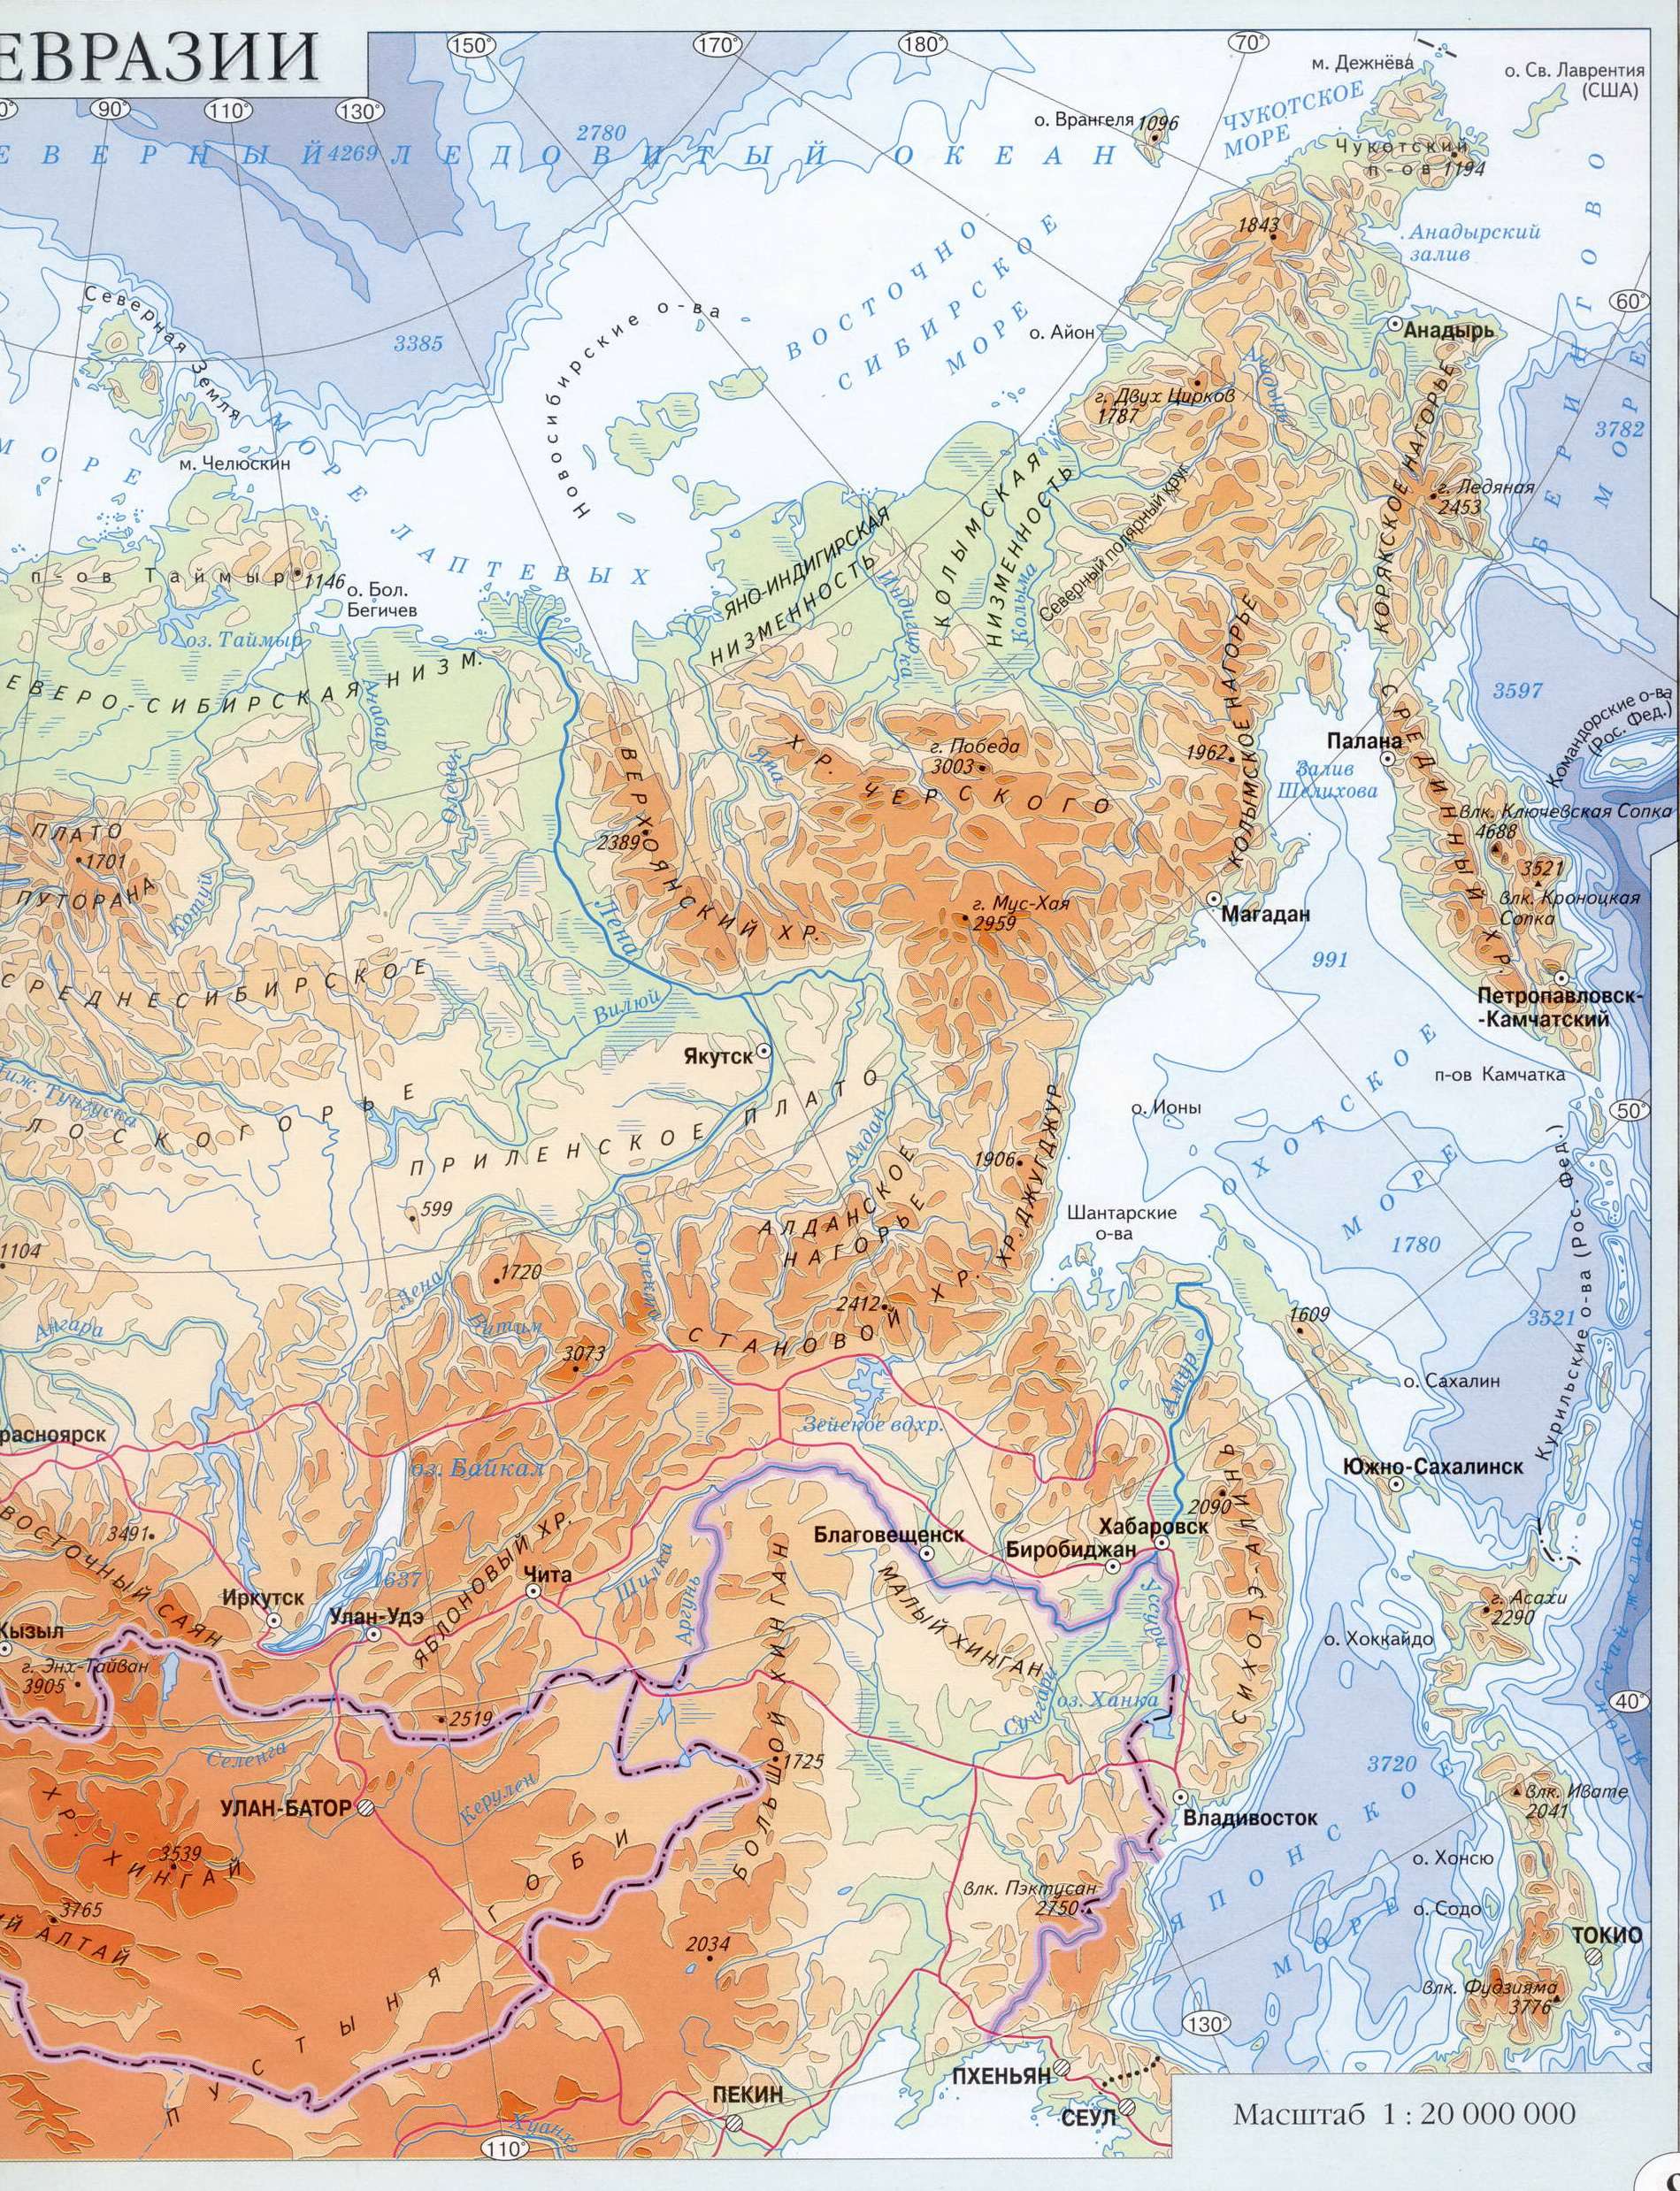  Карта России. Физическая карта России. Подробная физическая карта России. Карта северо-восточной Евразии - России, B0 - 